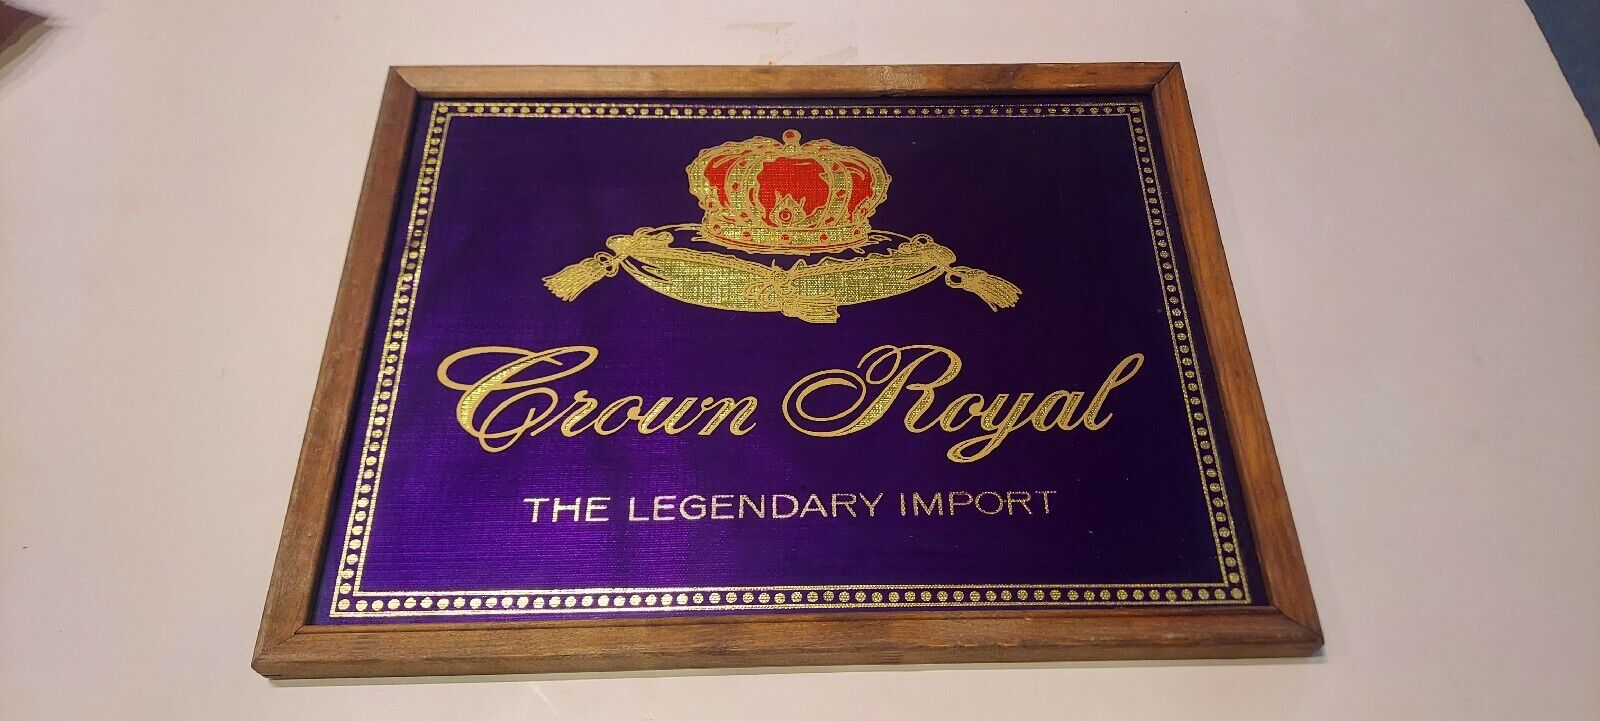 Vintage Crown Royal The Legendary Import Bar Sign Advertisement Framed